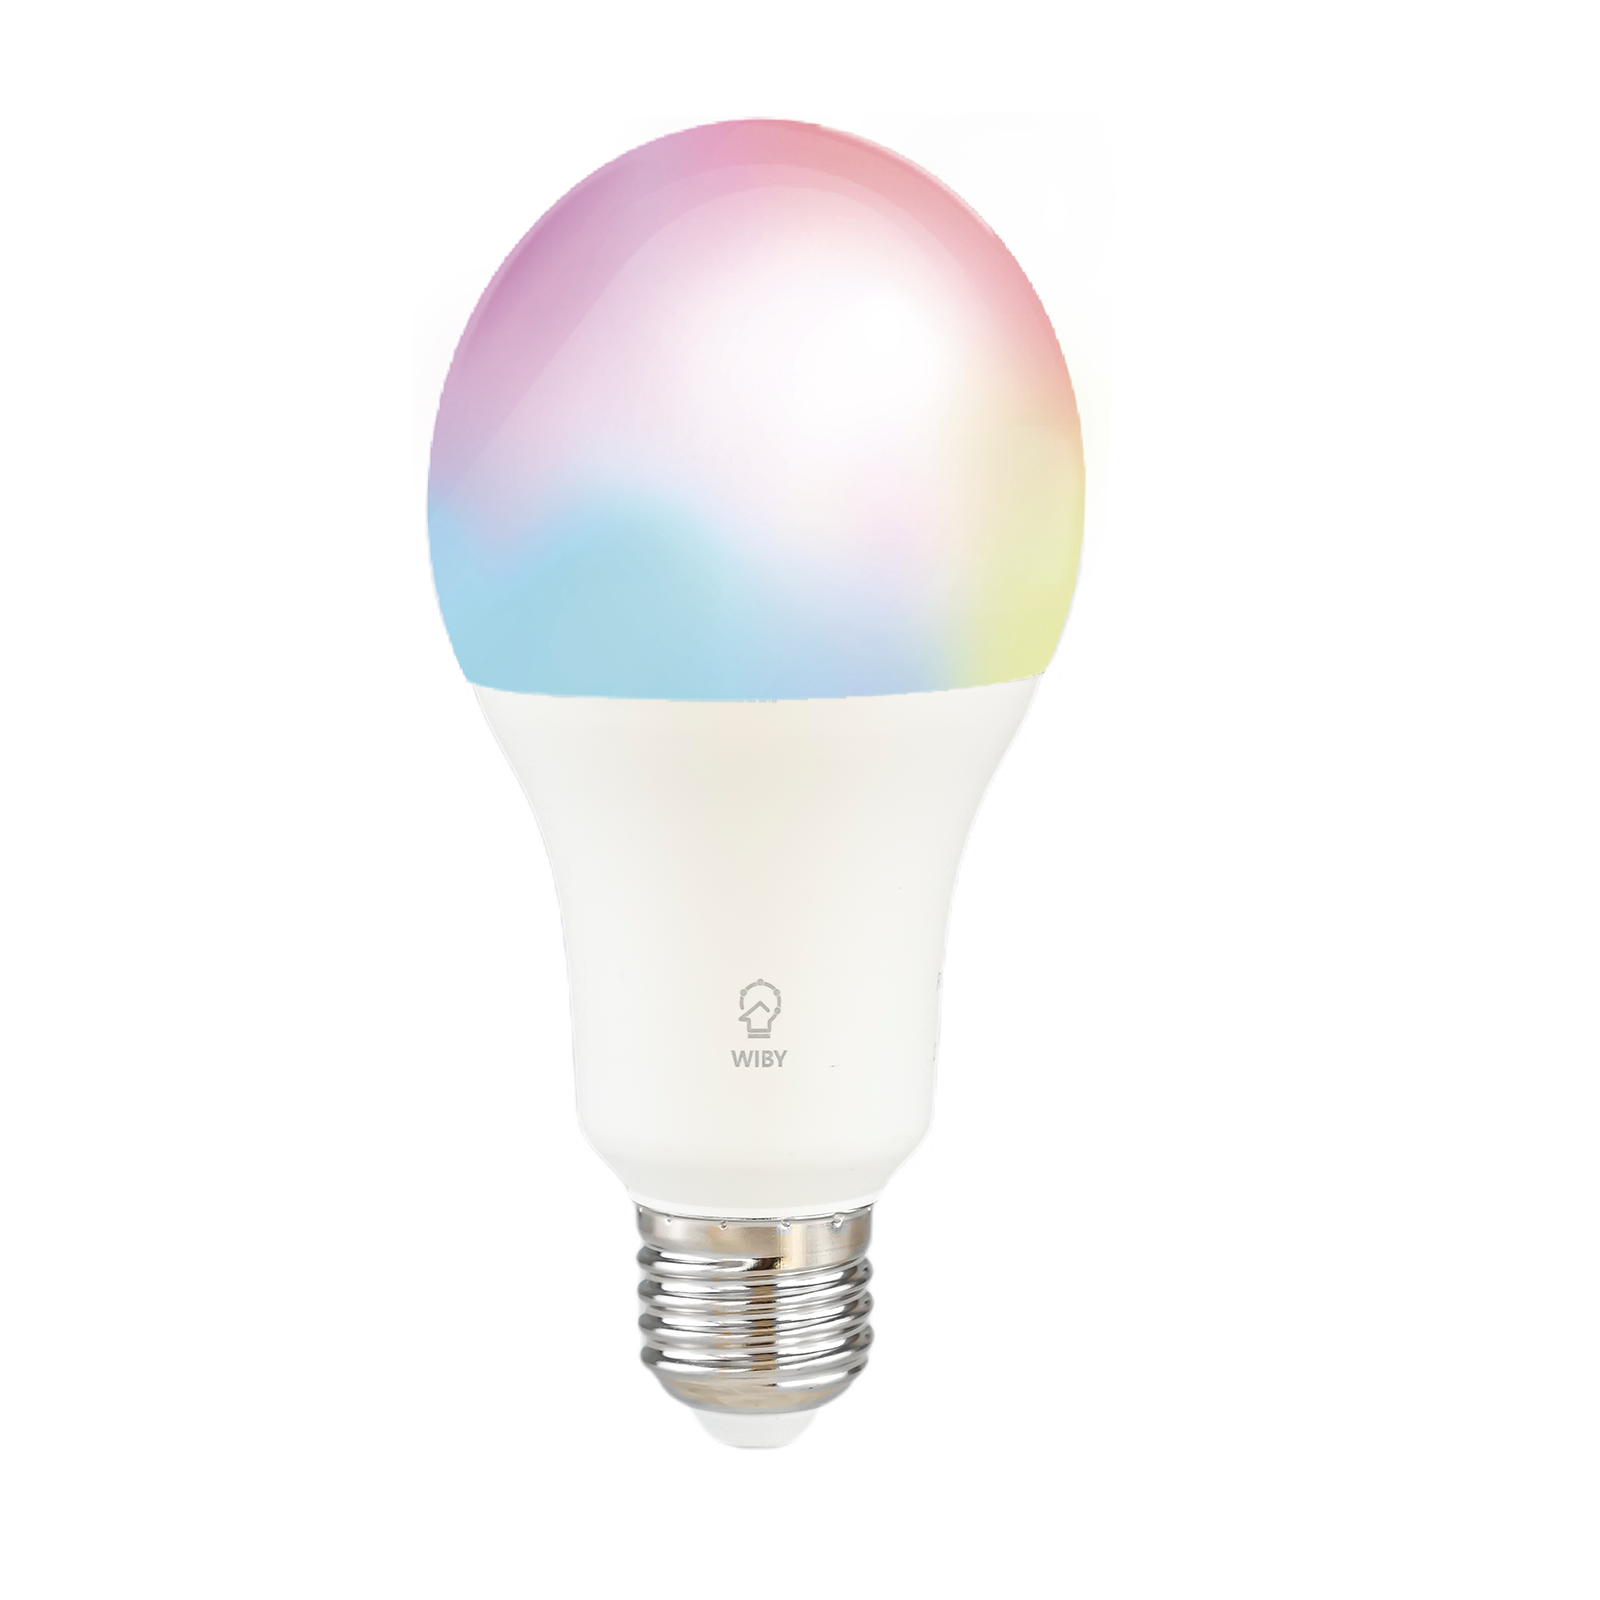 Intelligent 11W glödlampa av 1055 dimbar lumen med kompatibel applikation med Google och Alexa